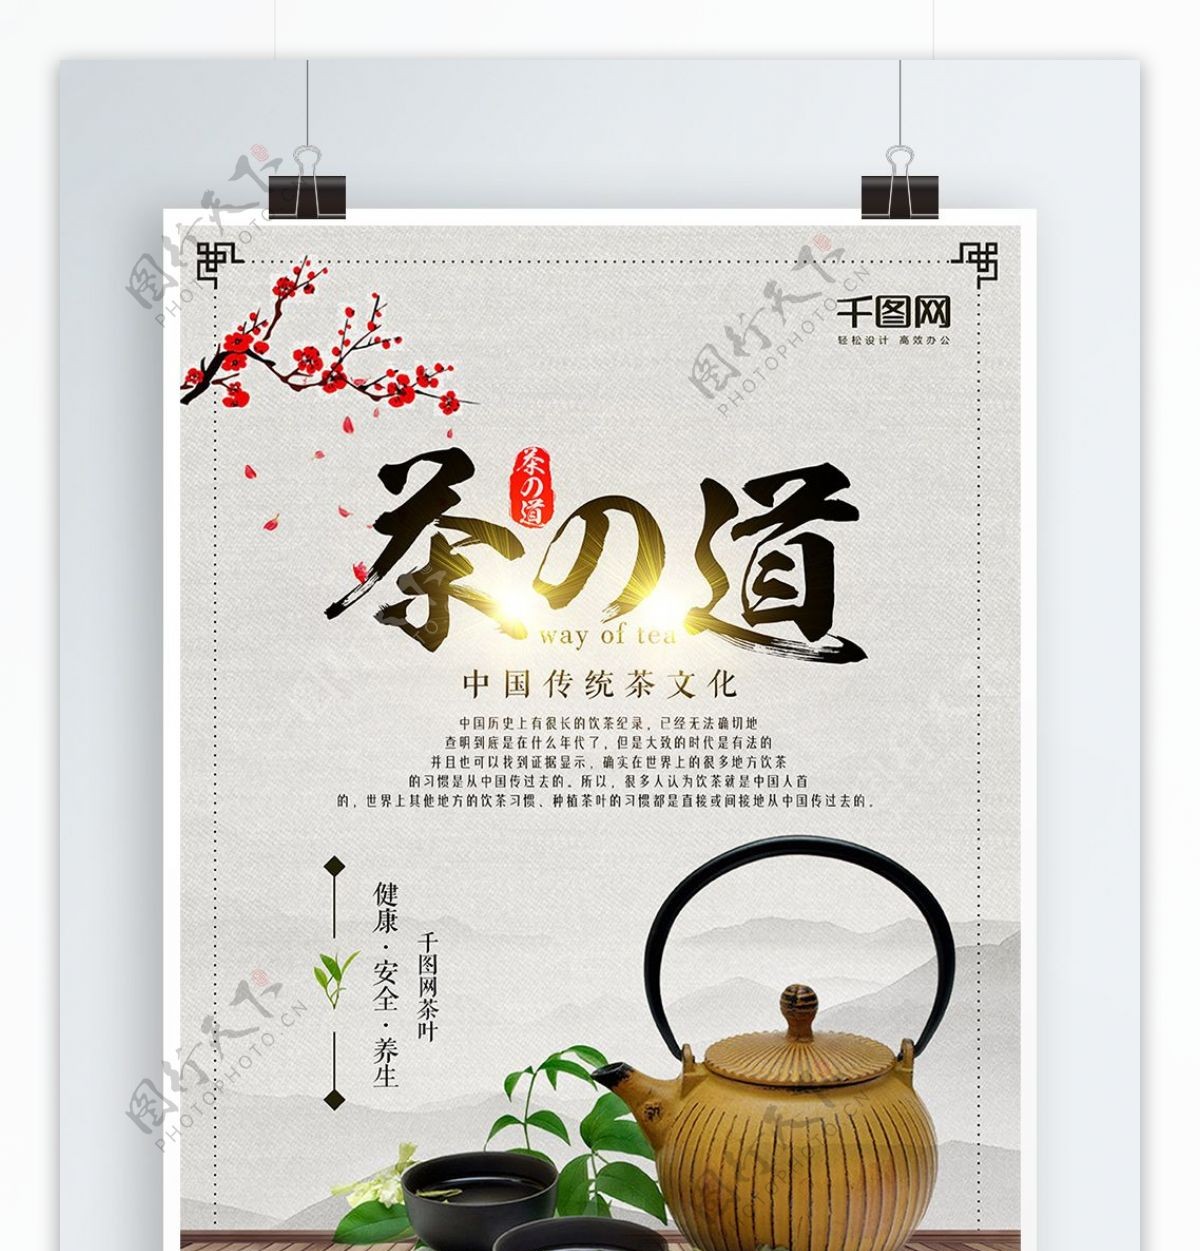 创意中国风茶之道文化宣传海报茶具杯具茶壶茶杯